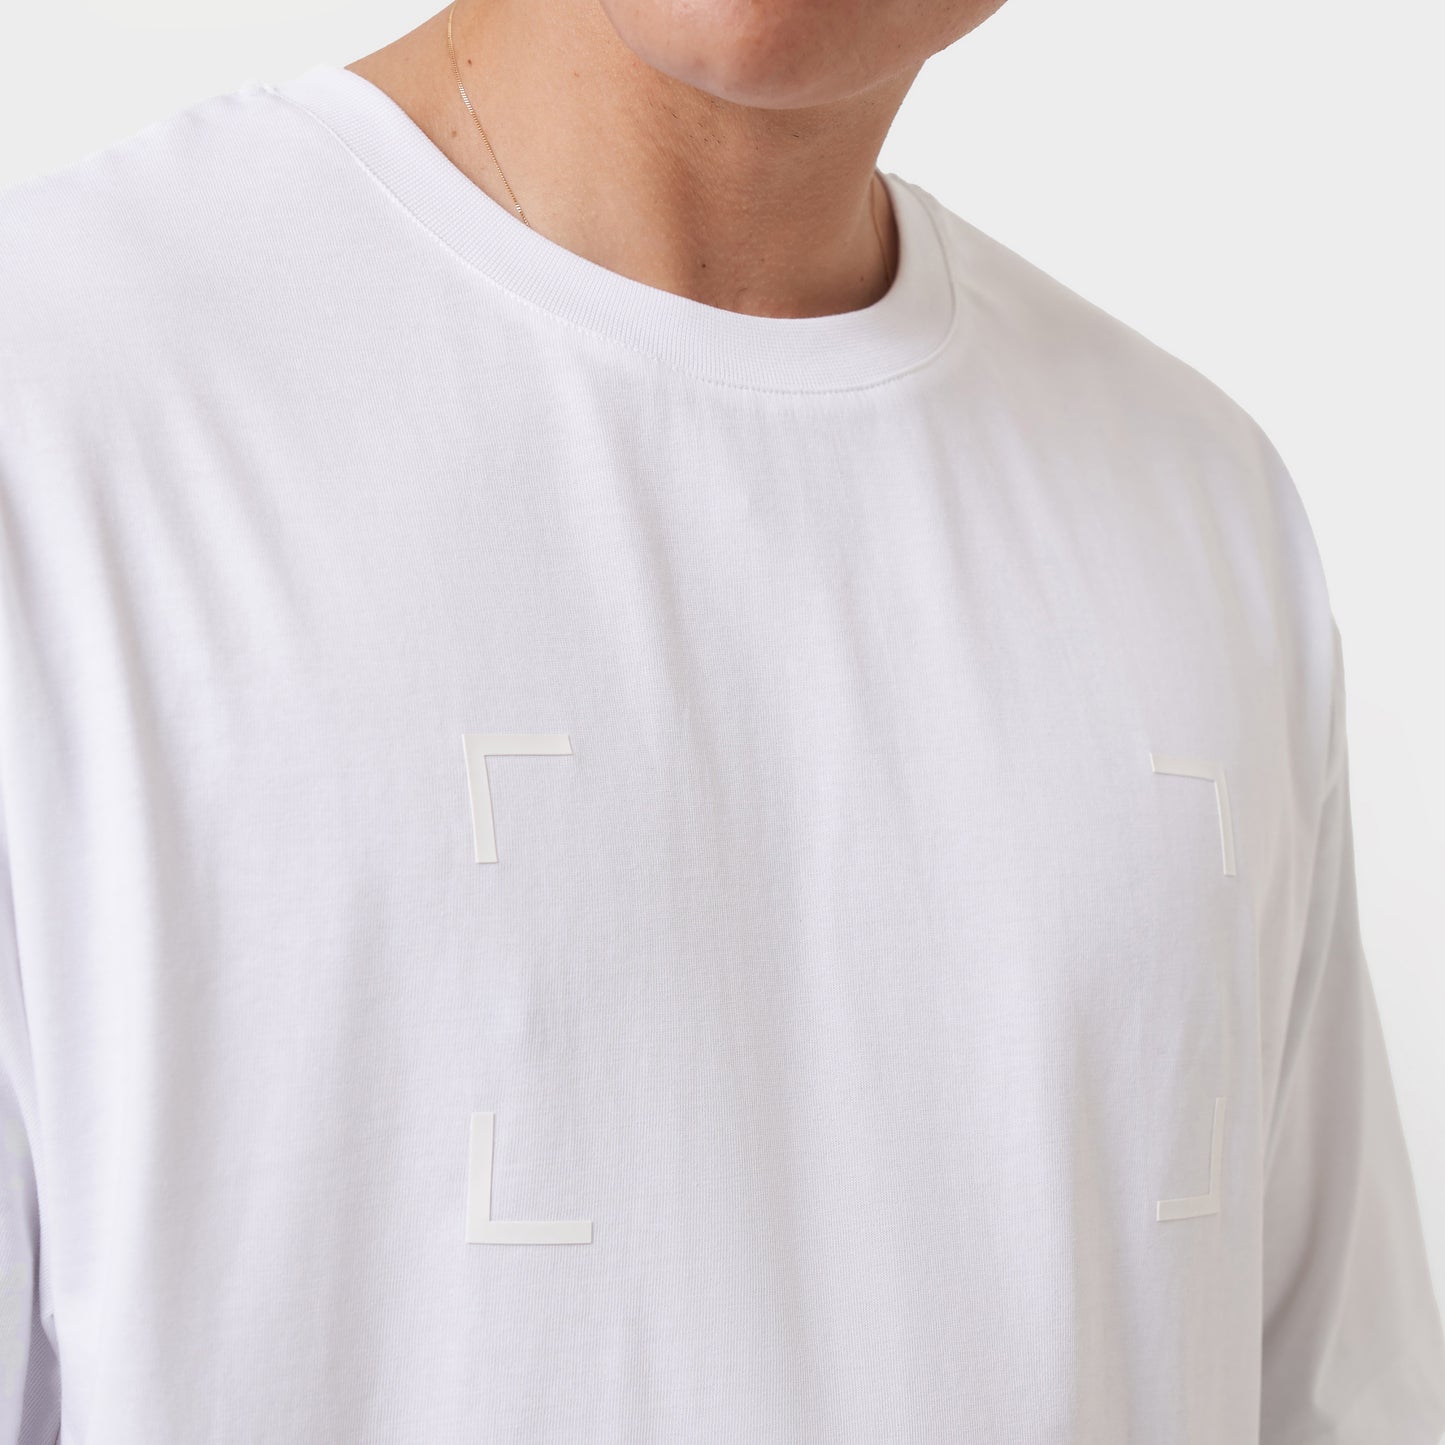 Mens Imprint Oversized T-Shirt - White